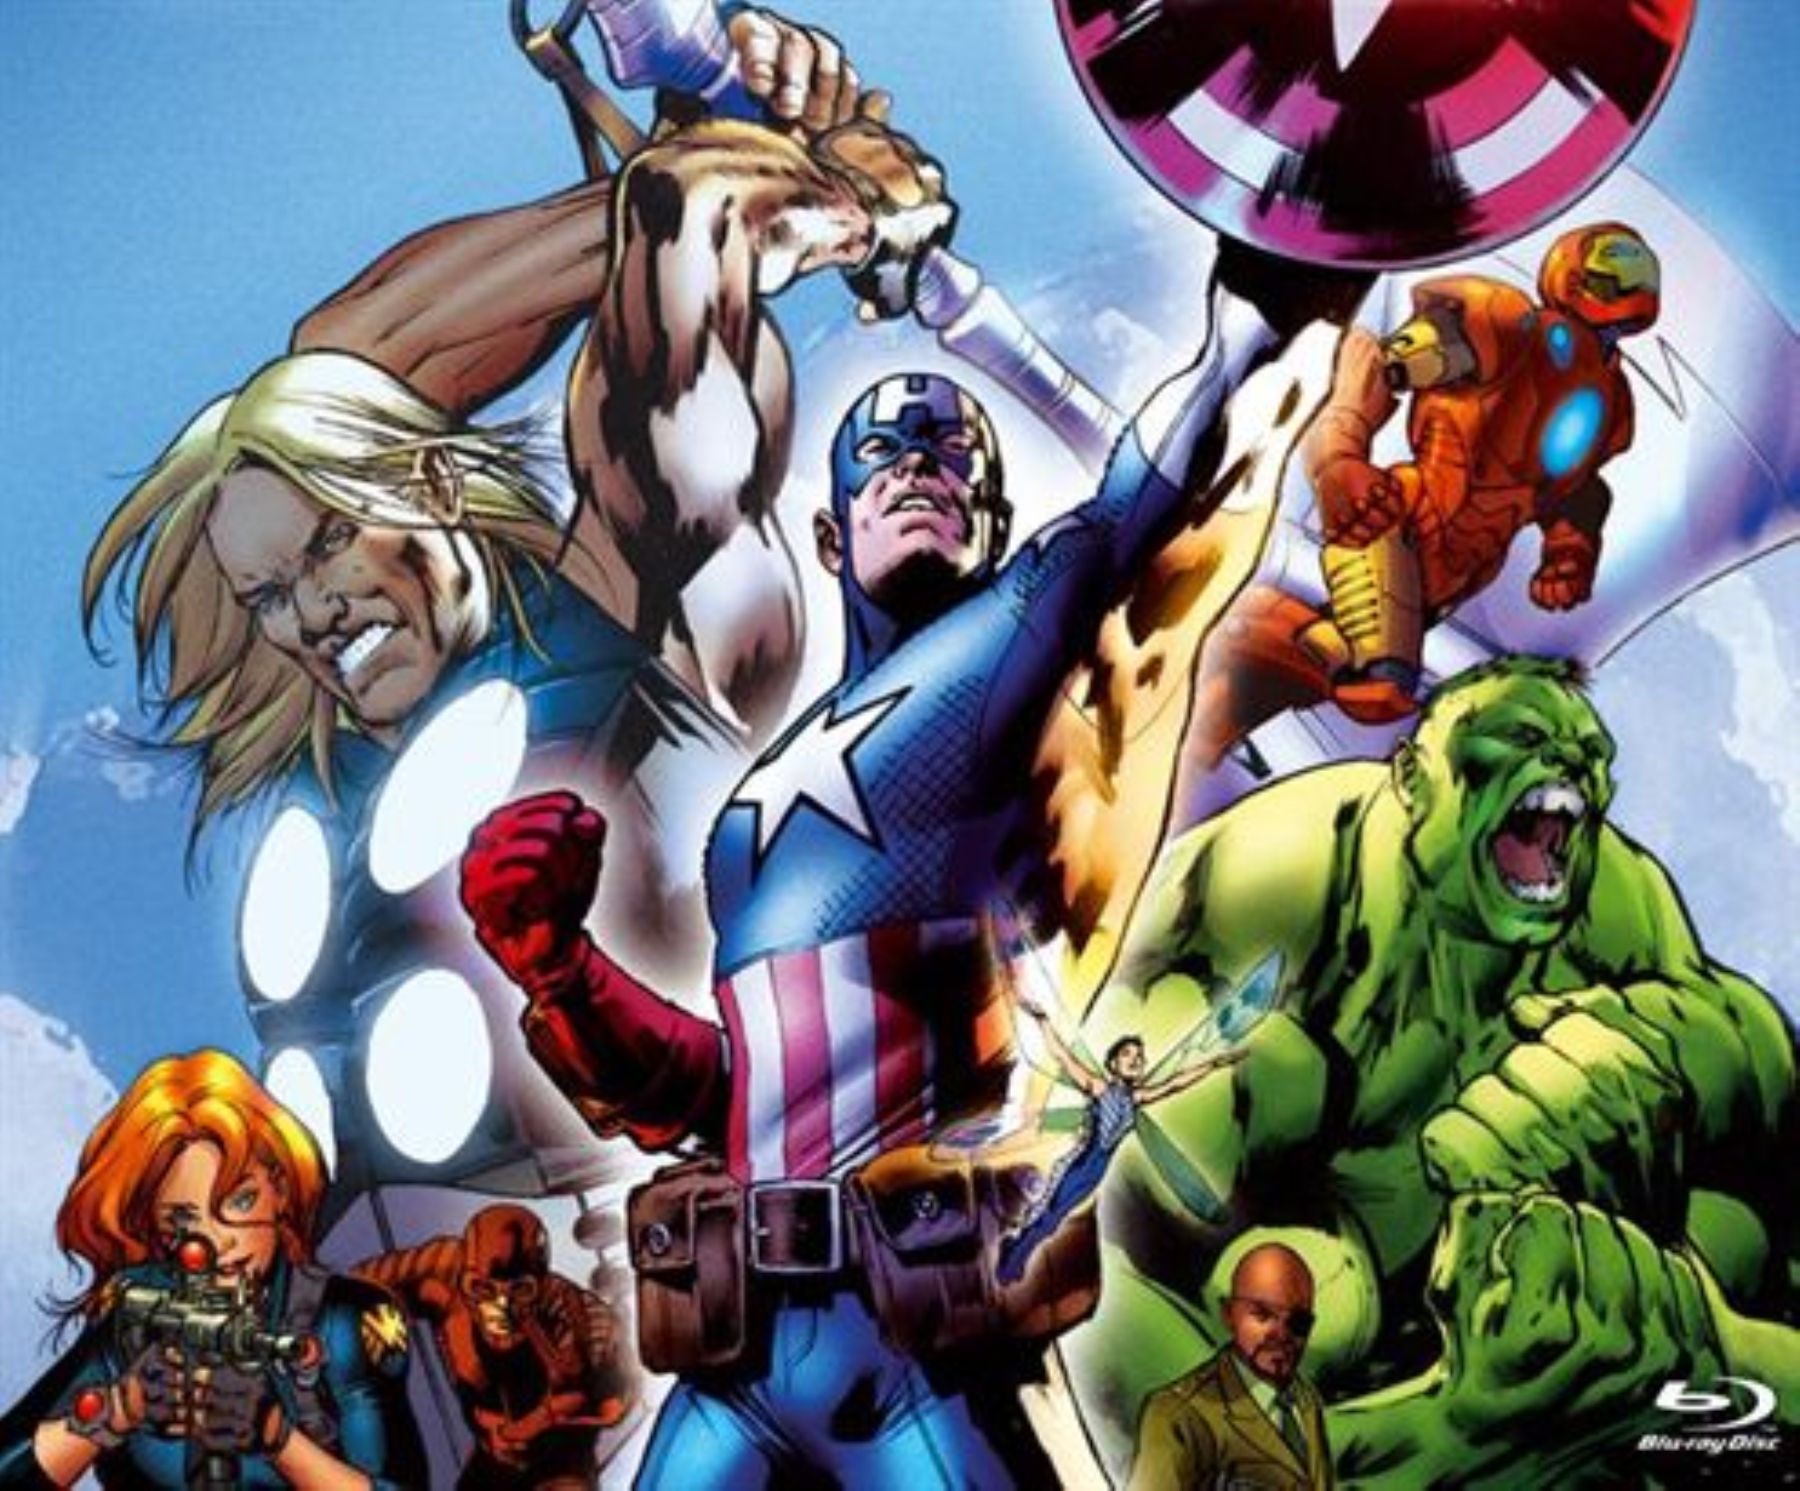 Personajes de Marvel. INTERNET/Medios